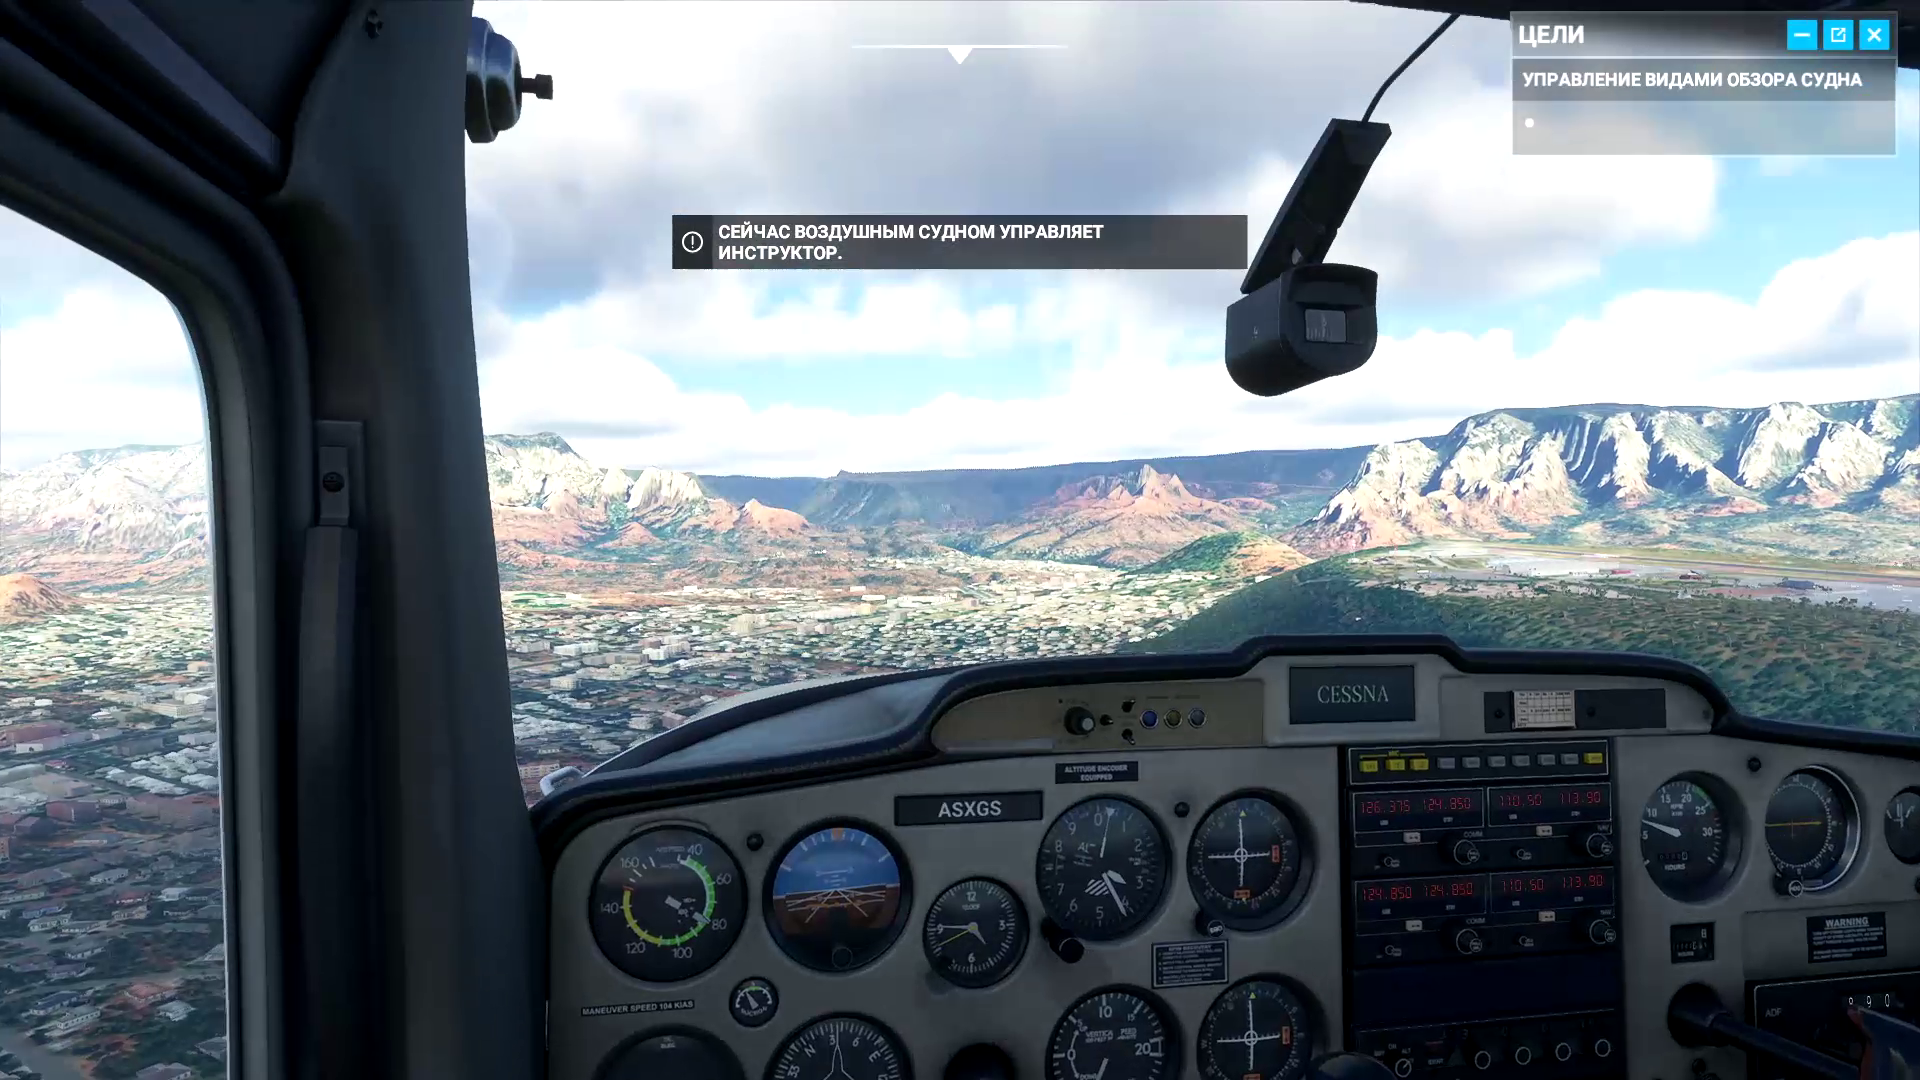 Microsoft Flight Simulator 2020 включает в себя 8 обучающих миссий